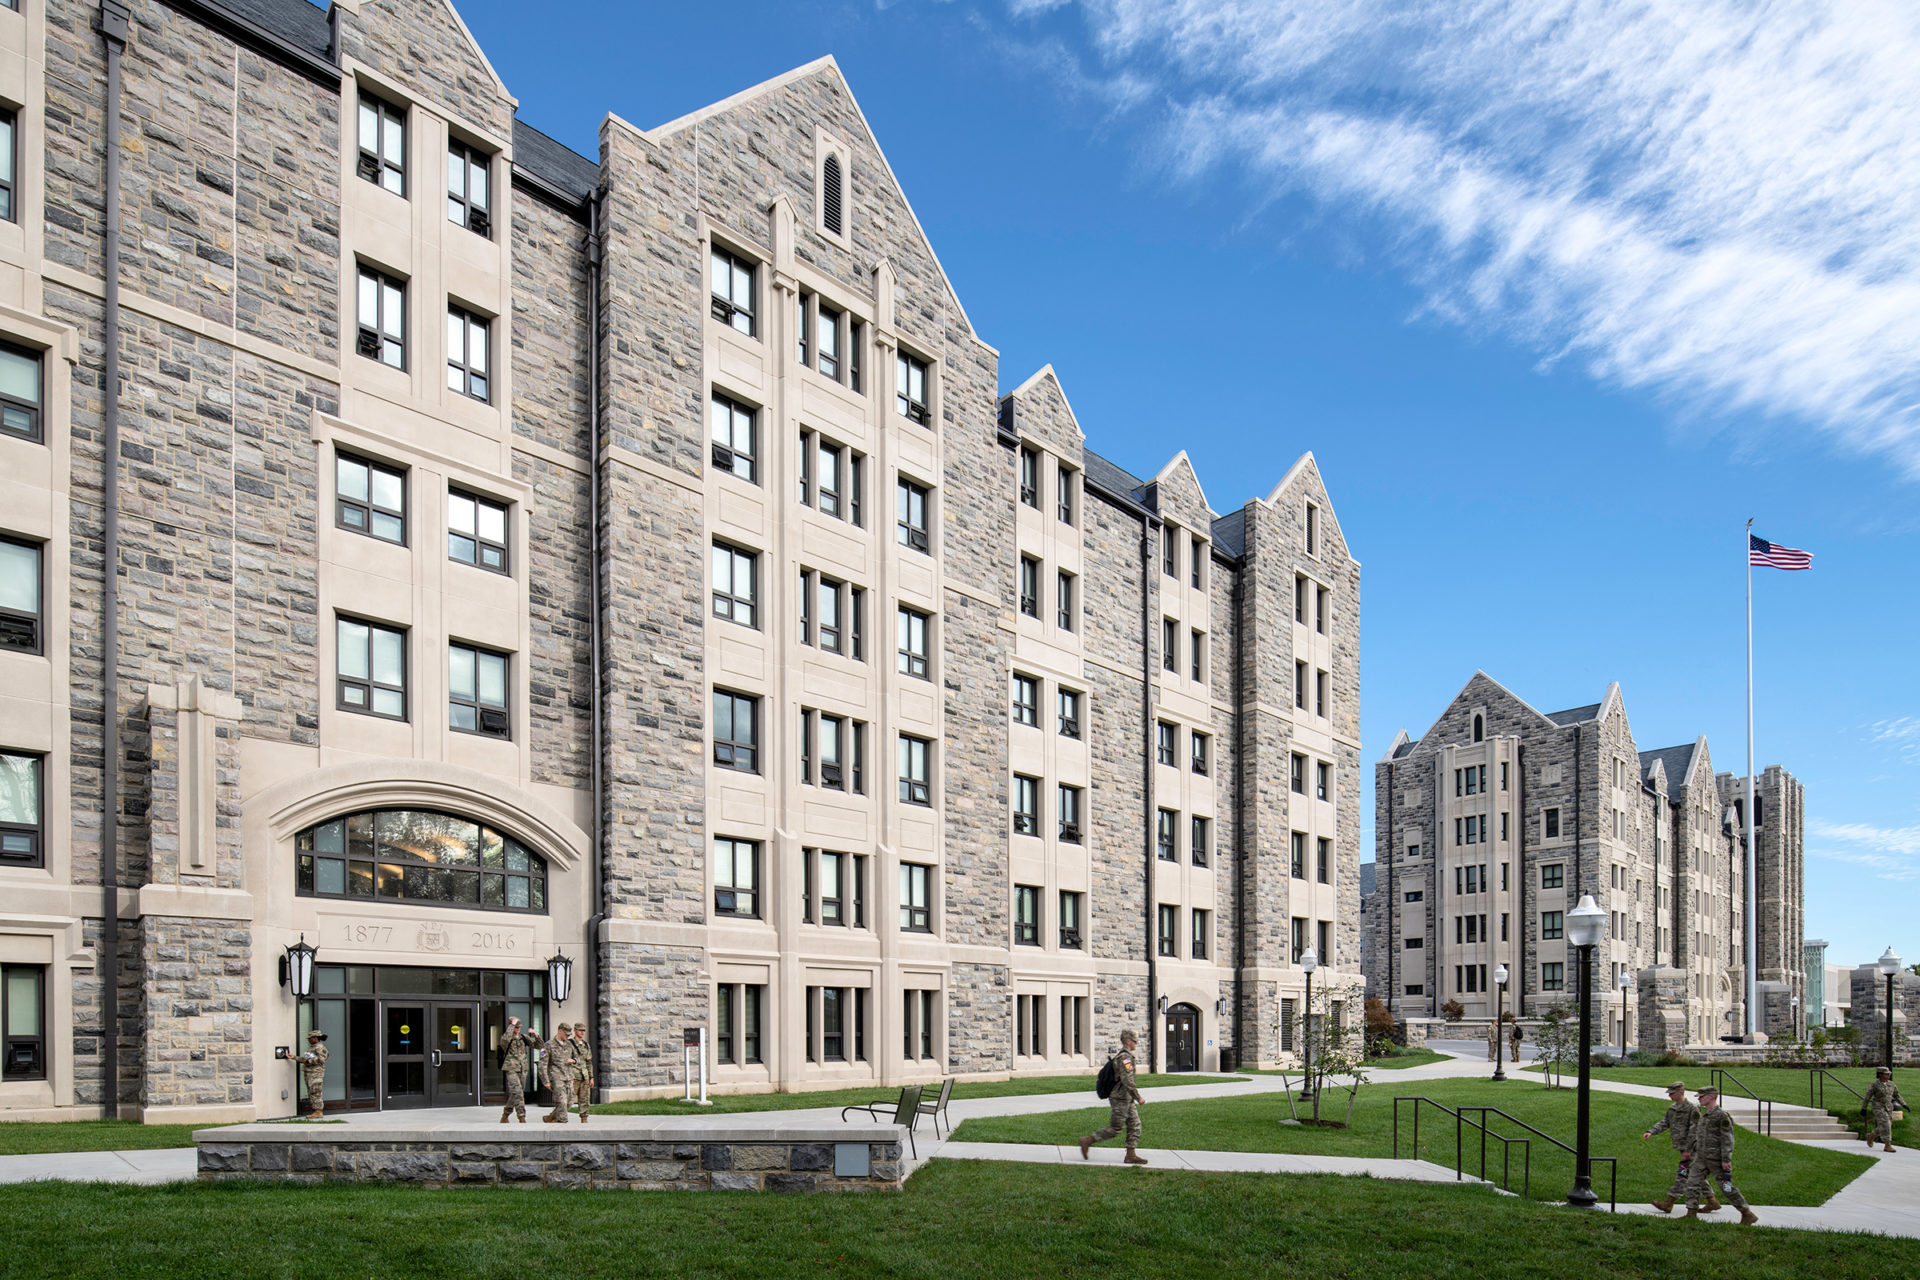 Upper Quad Residential Facilities at Virginia Tech, Blacksburg, Virginia